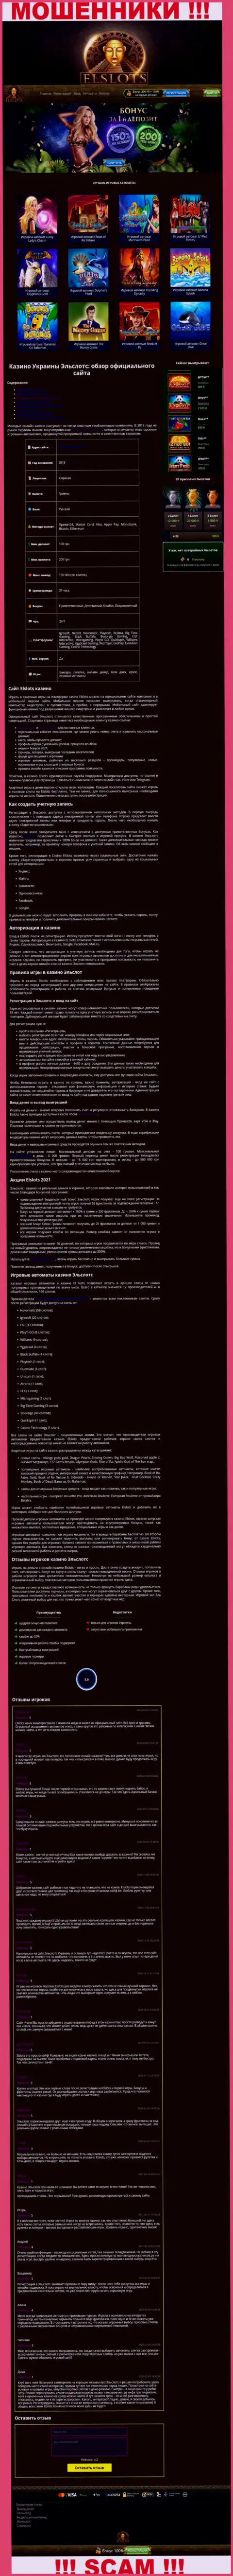 Вид официальной онлайн-странички жульнической организации ElSlots